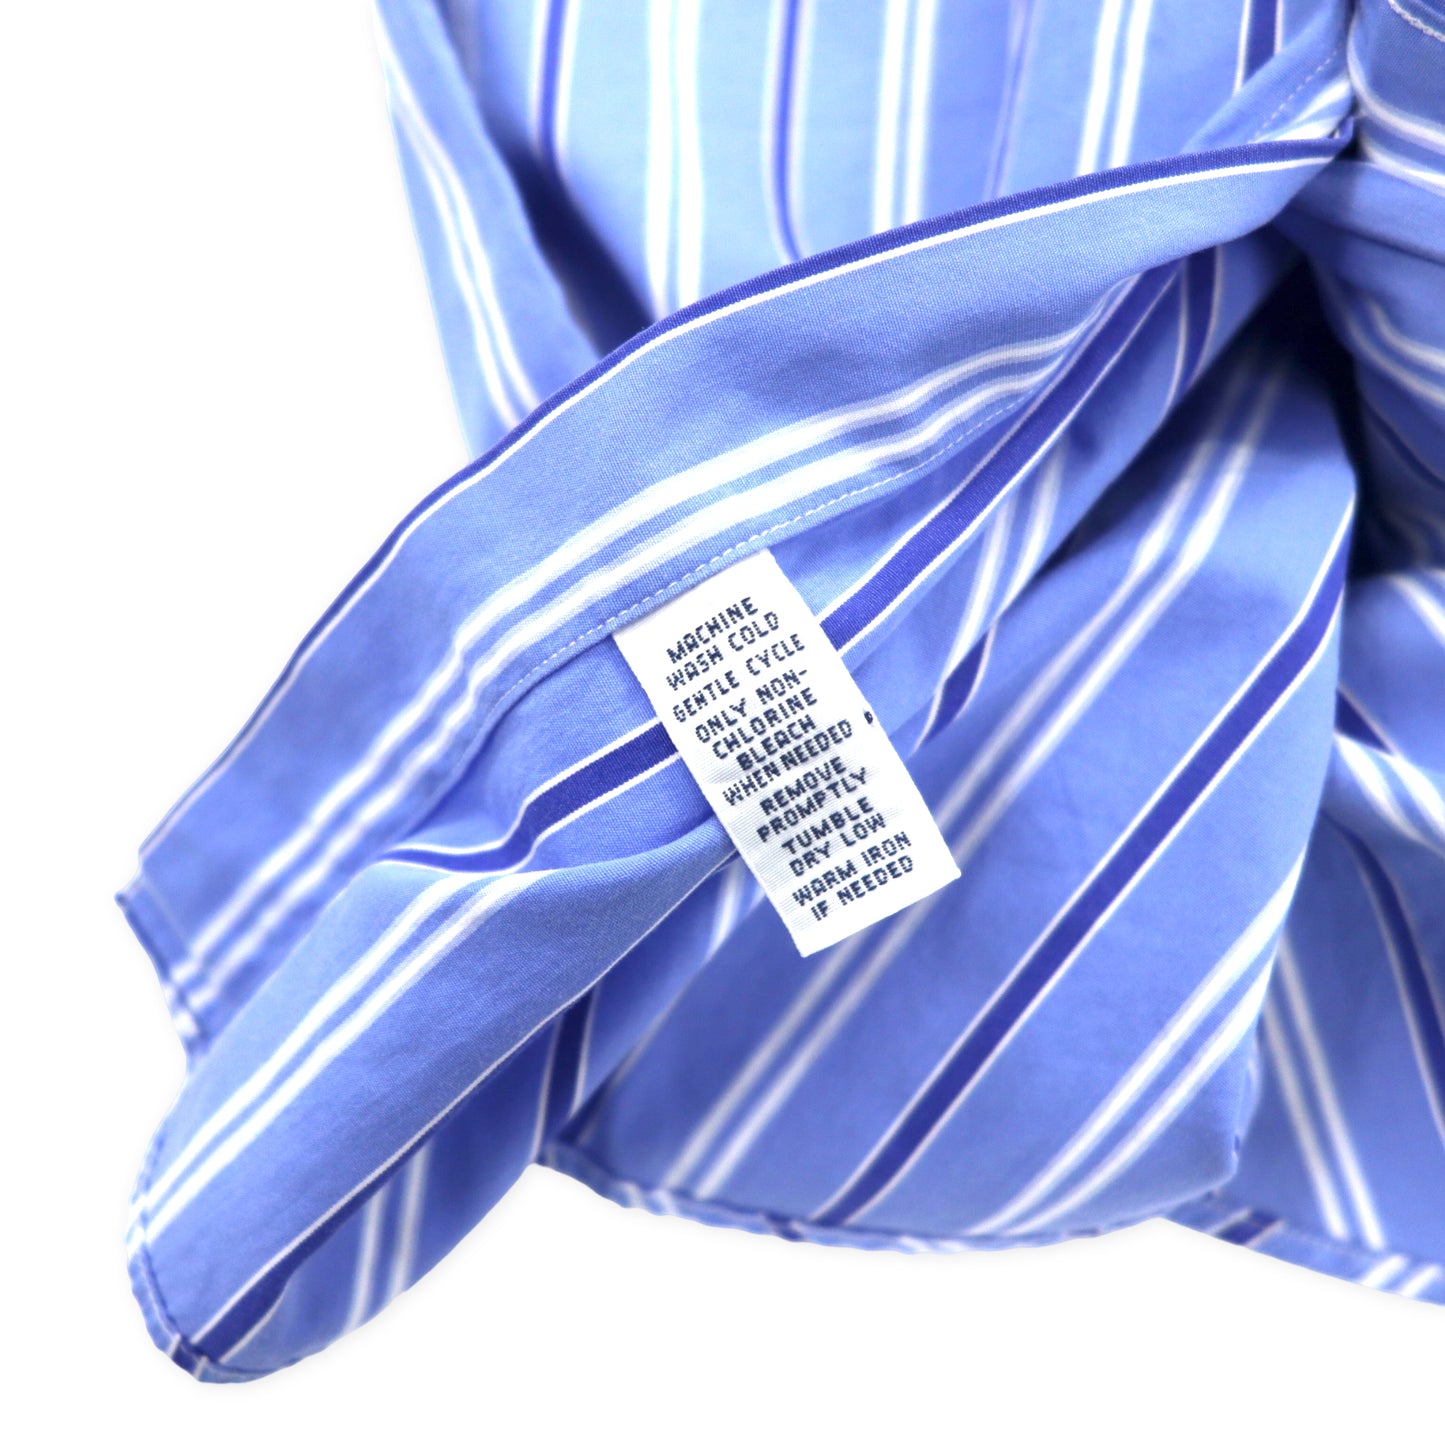 Ralph Lauren ボタンダウンシャツ XXL ブルー ストライプ コットン CLASSIC FIT スモールポニー刺繍 ビッグサイズ